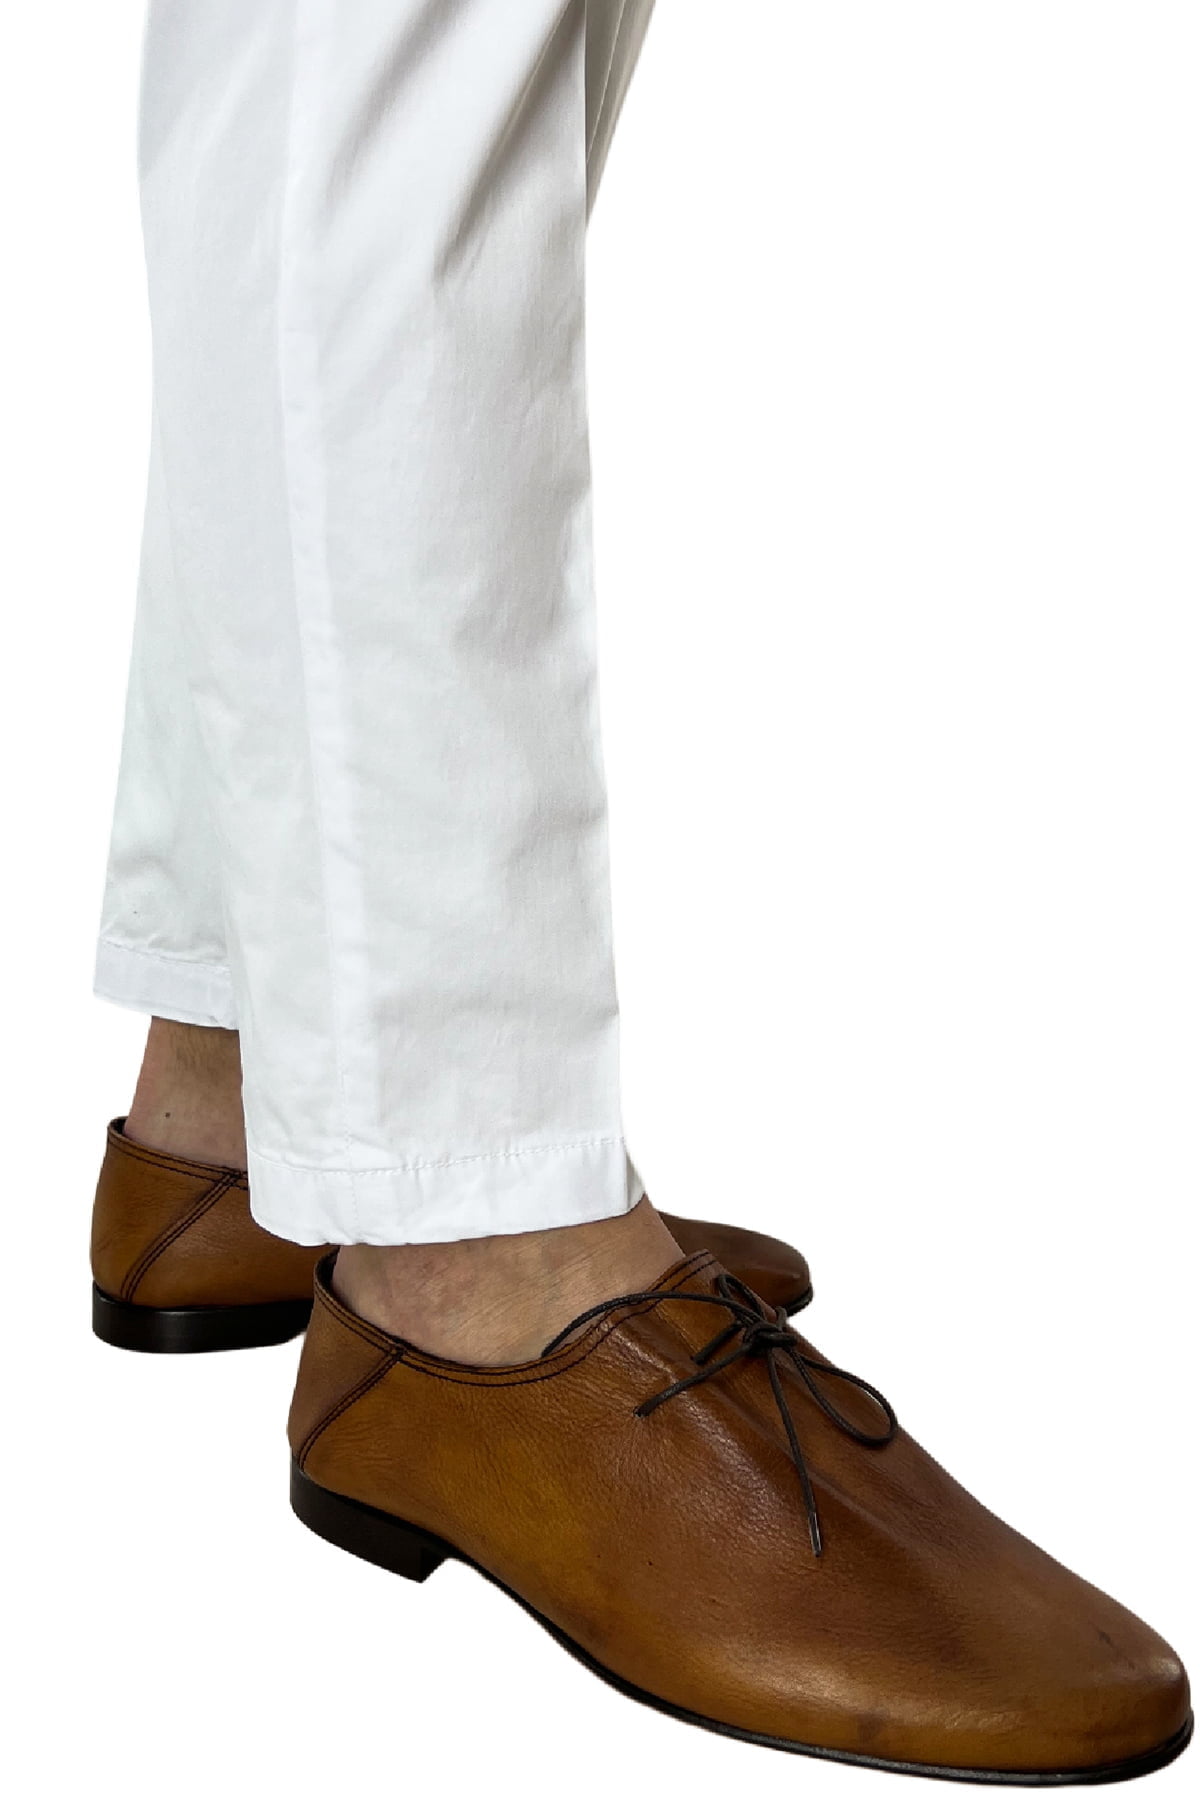 Pantalone uomo bianco in Cotone tasca america leggermente elastico estivo